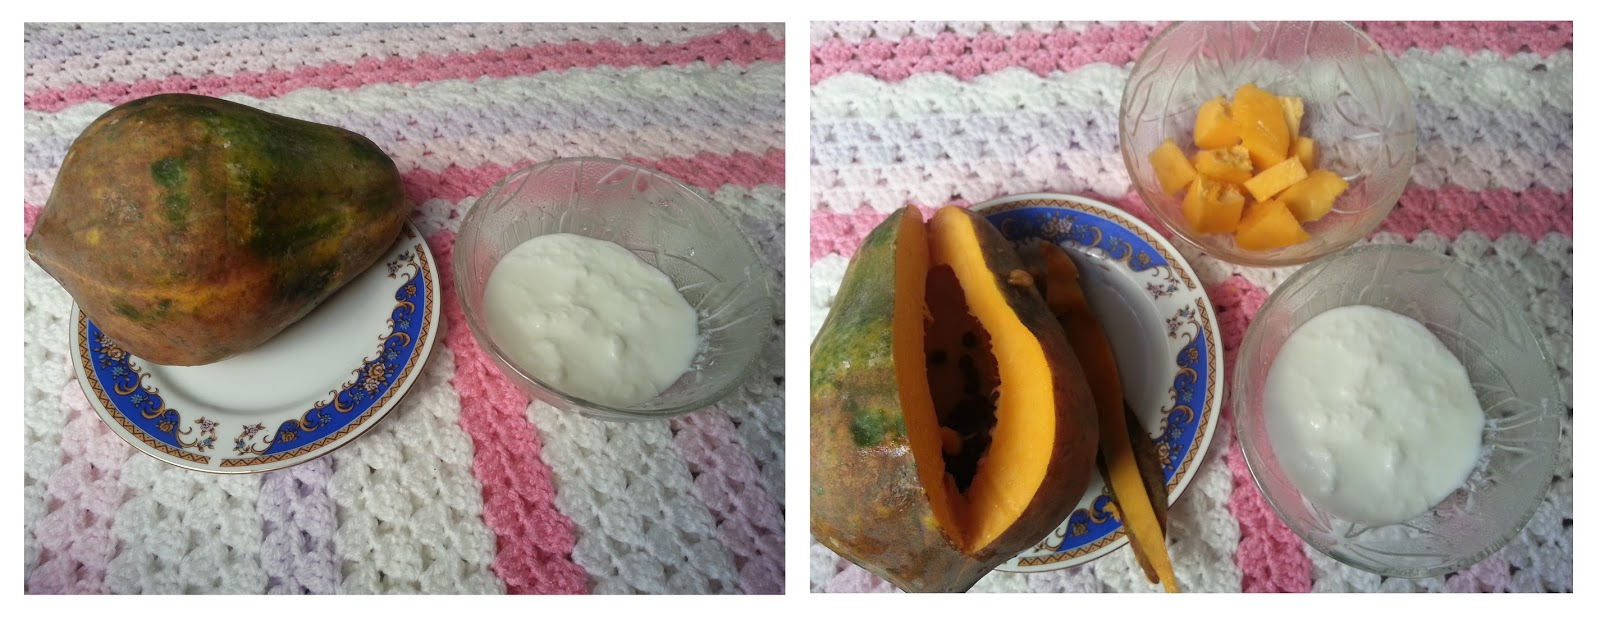 Yogurt & Papaya Face Mask For Dry Skin